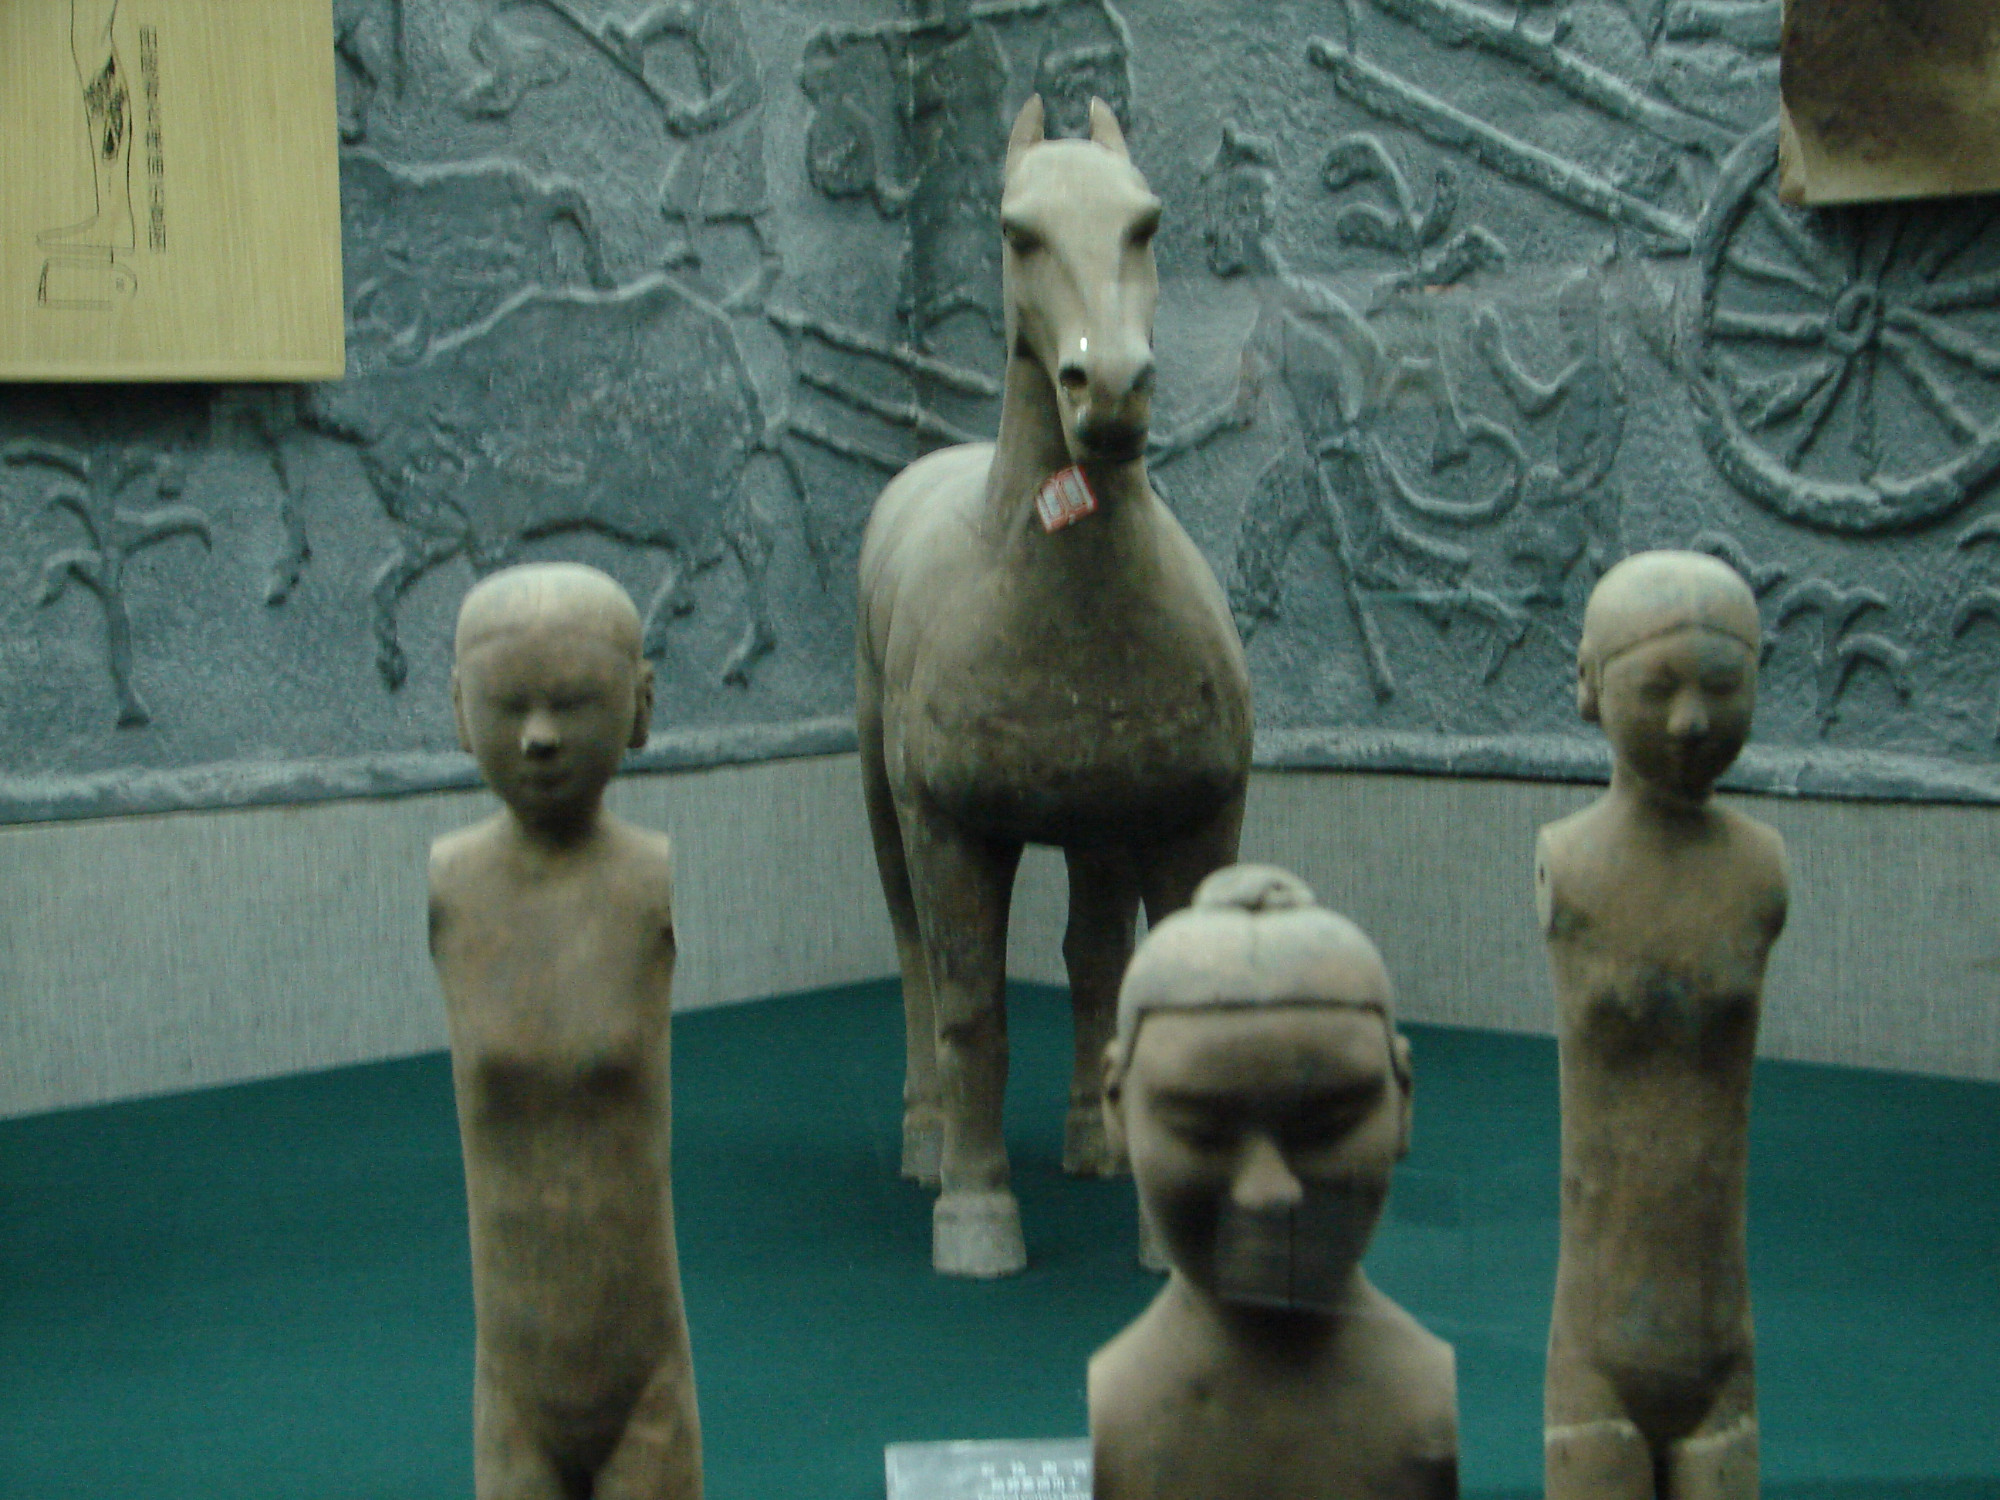 Smaller Terracotta Figures